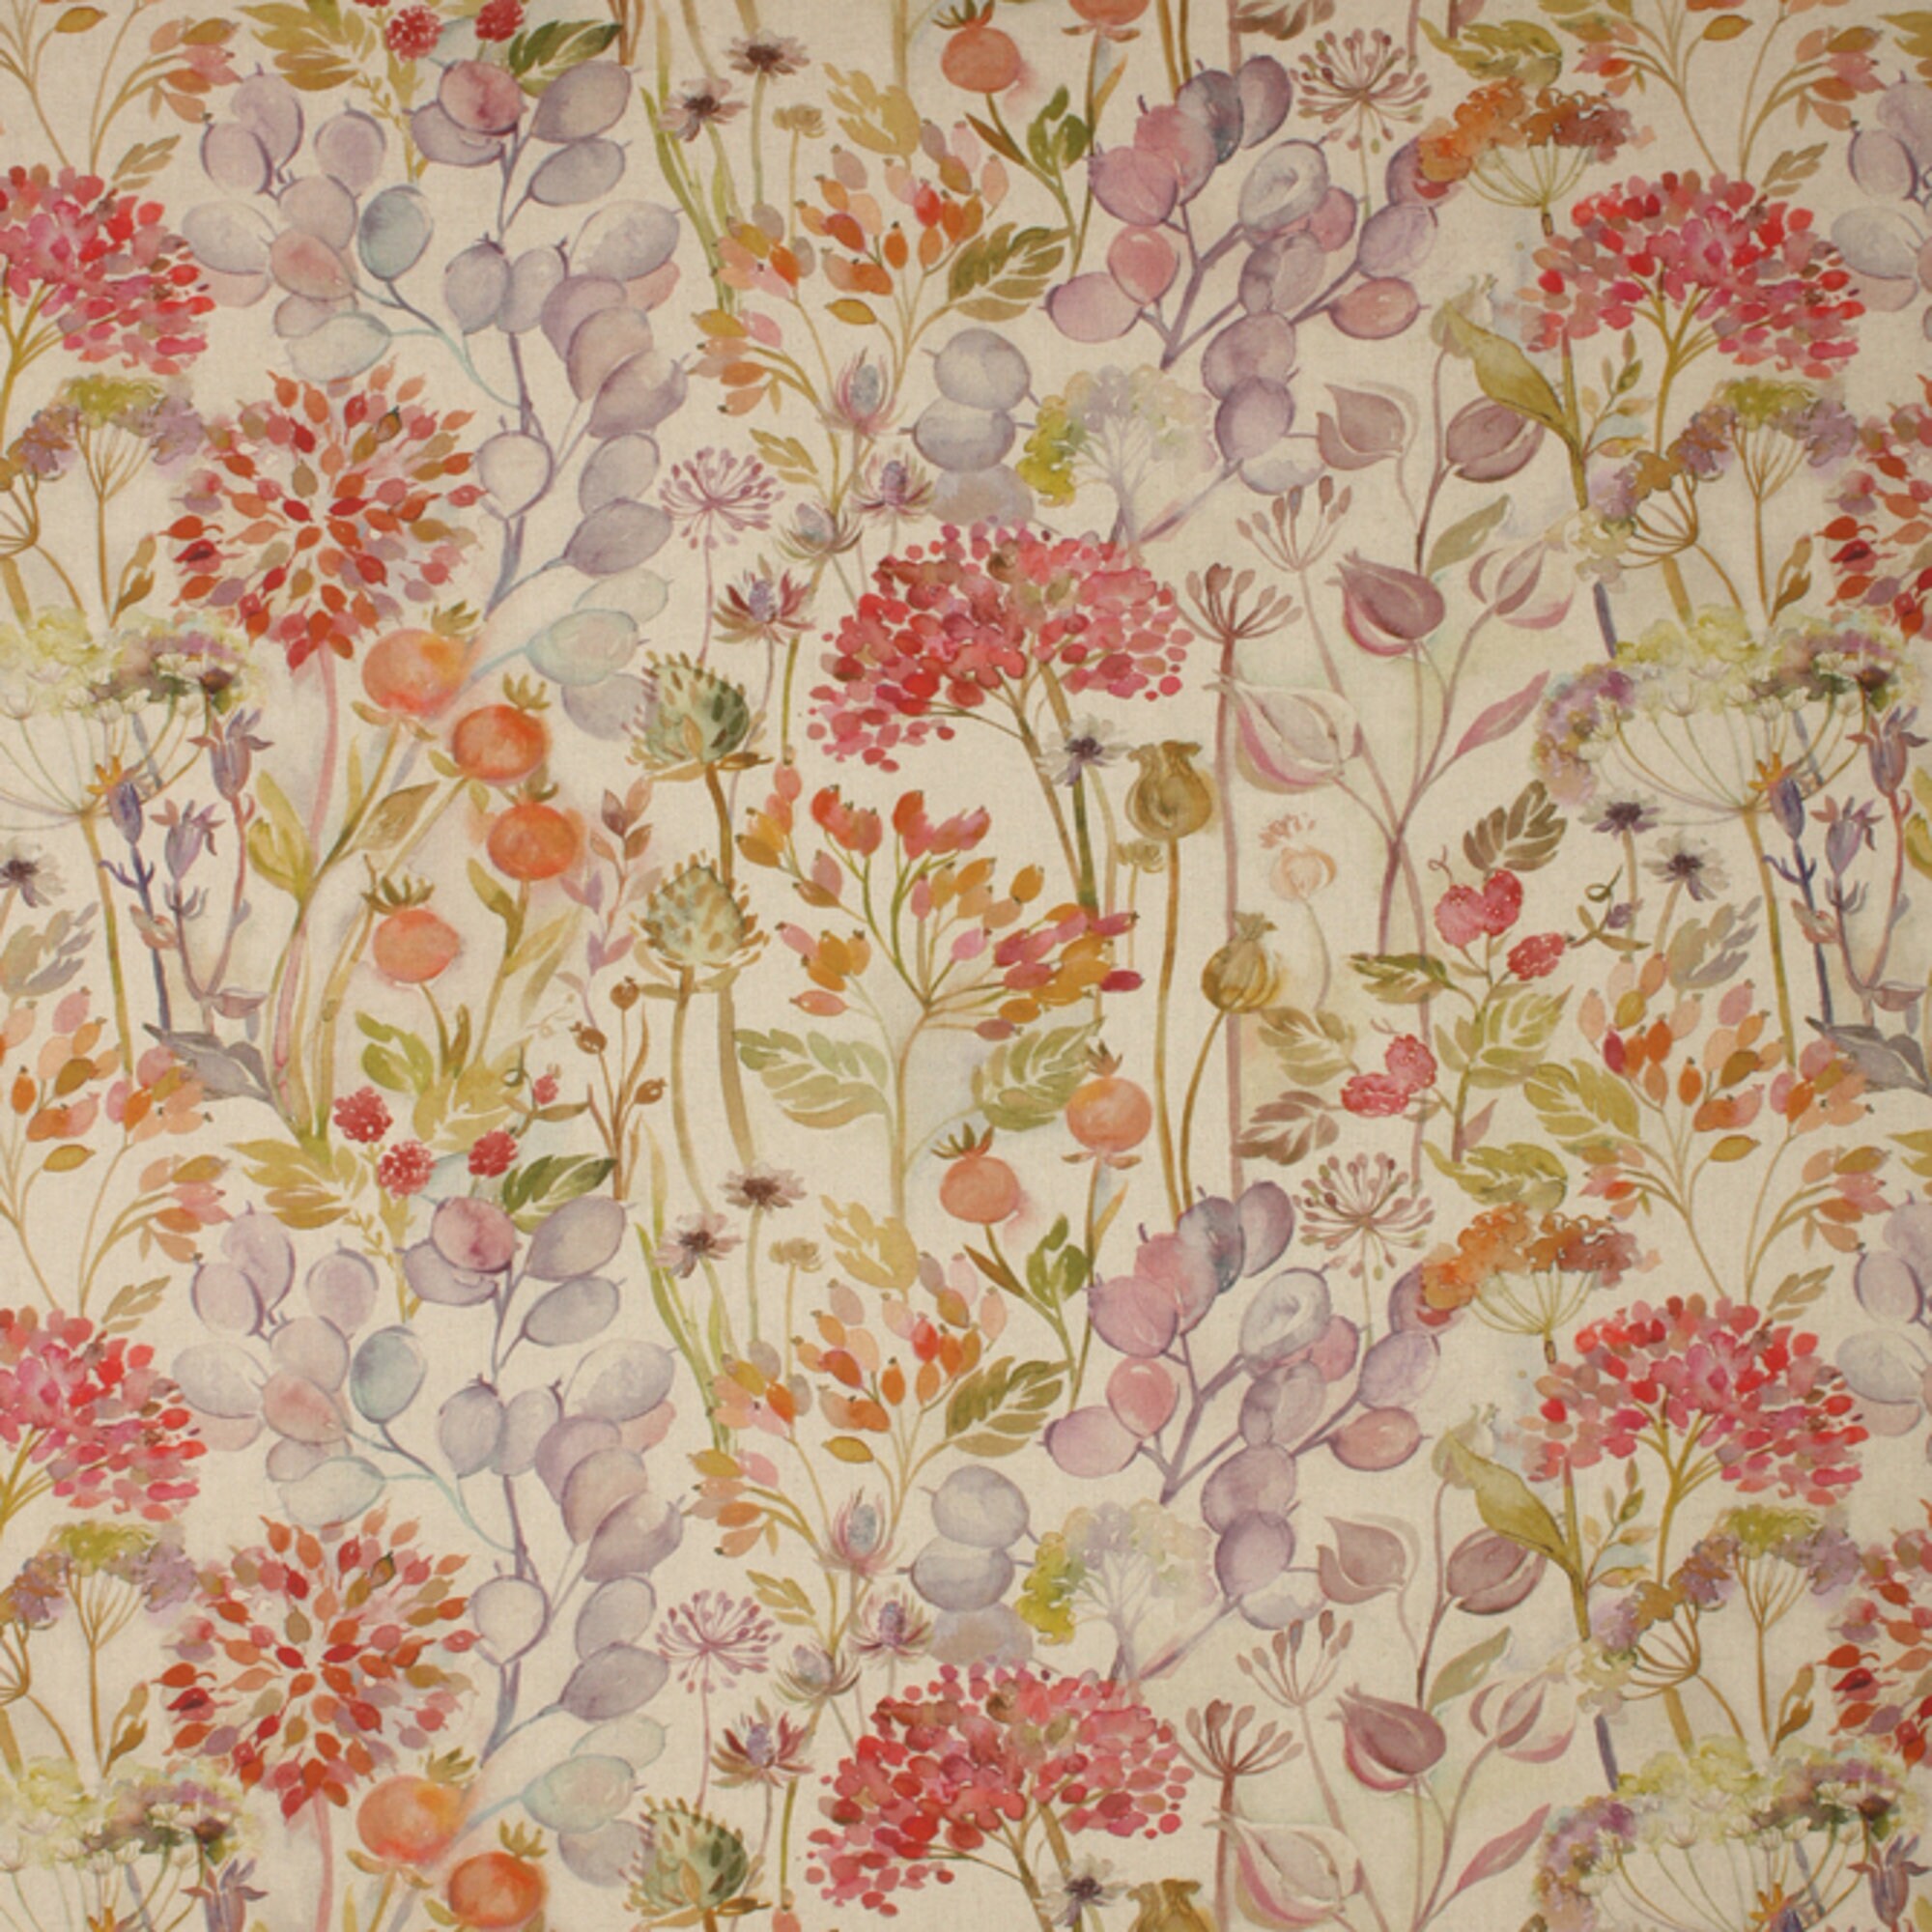 Voyage Hedgerow Autumn Fabric Linen Cotton Floral | Etsy UK